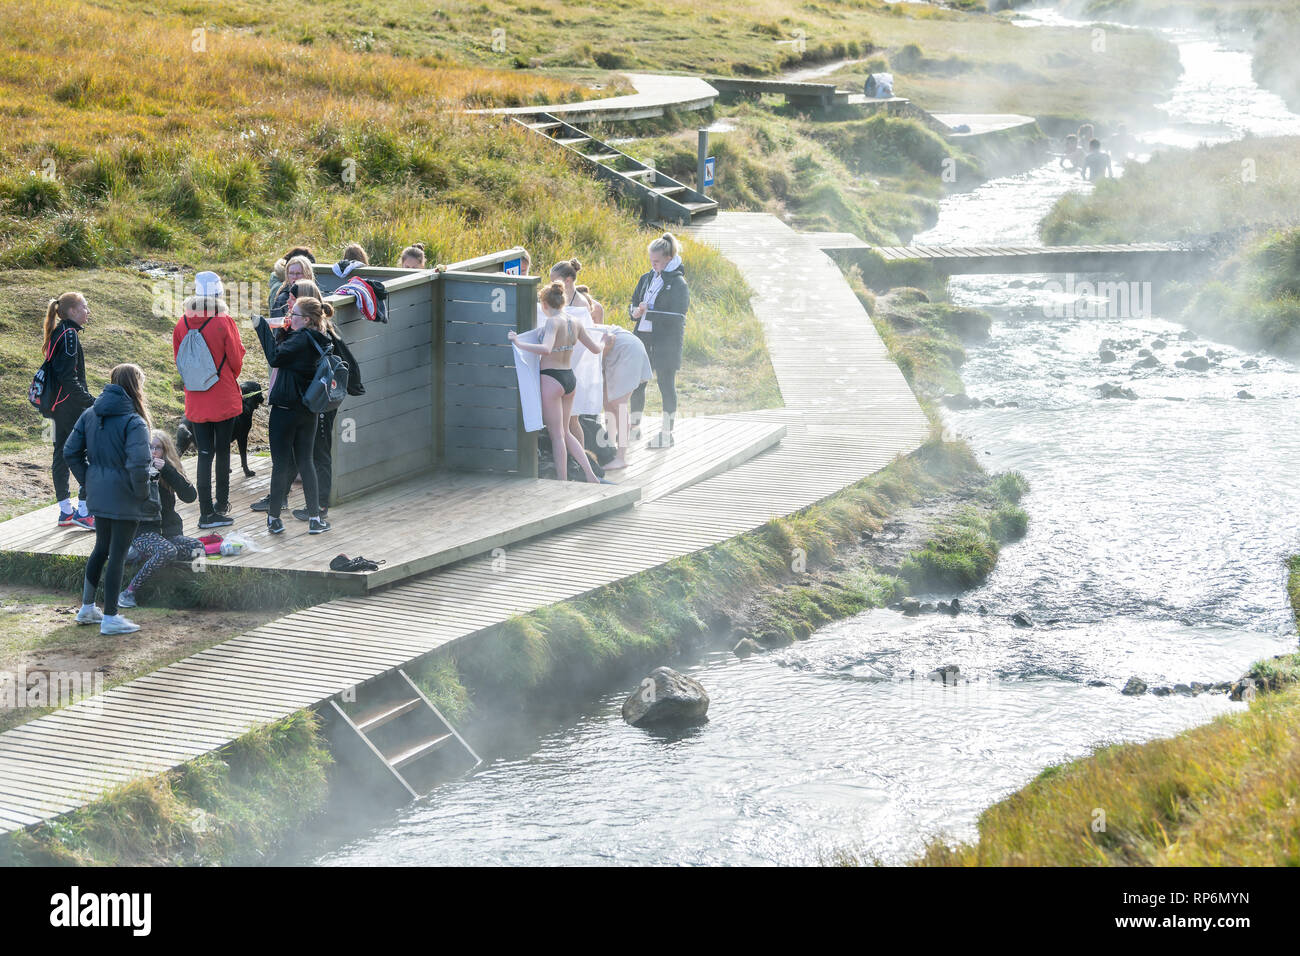 Hveragerdi, Islande - 18 septembre 2018 : de nombreuses piscine baignade dans les sources chaudes sur le sentier en automne au cours de Reykjadalur jour dans le sud de l'Islande sur l'ec d'or Banque D'Images